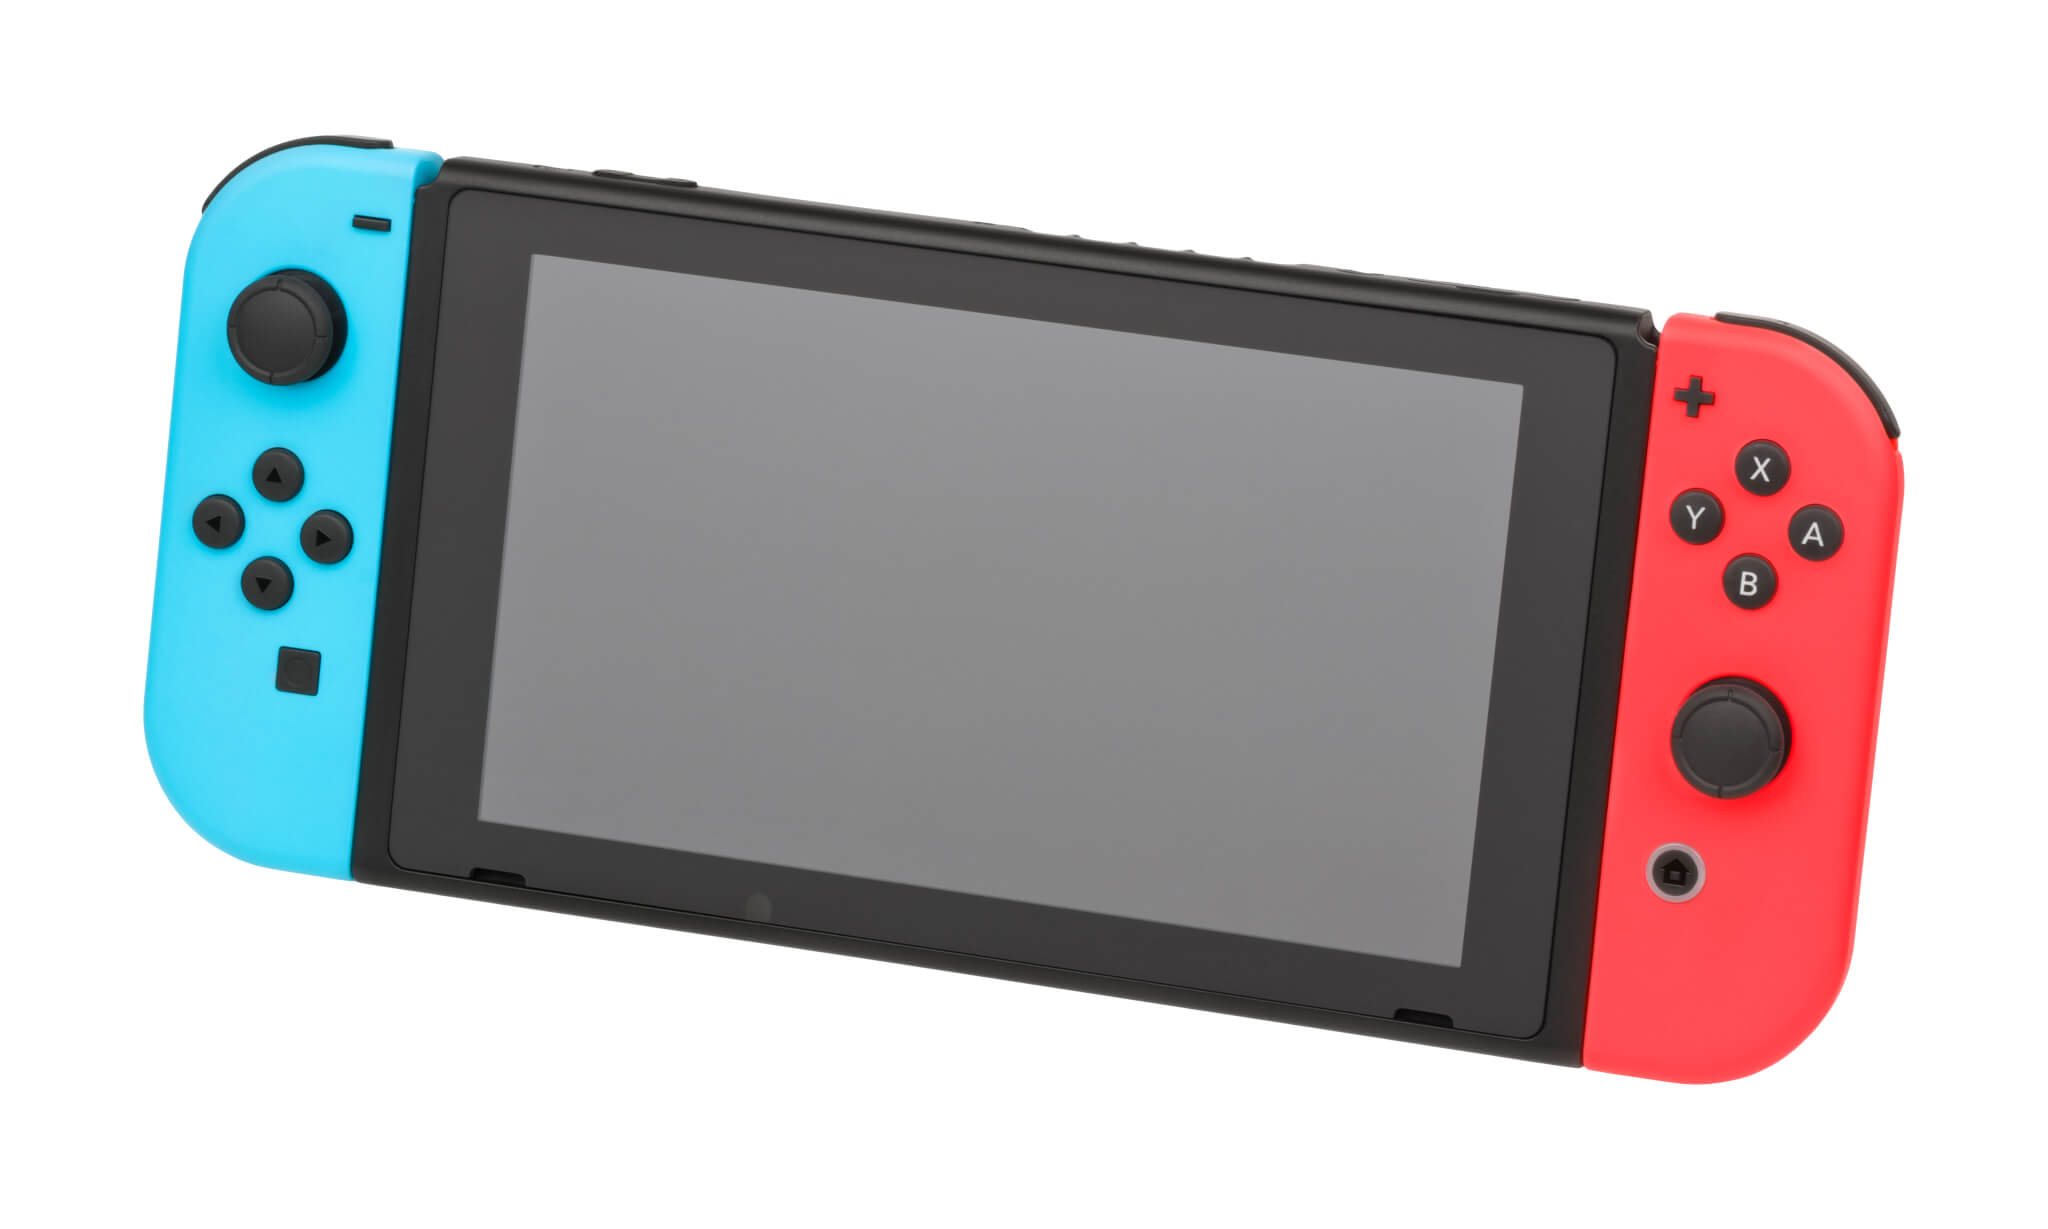 SAV Nintendo Switch : votre panne sera-t-elle prise en charge sous garantie ?